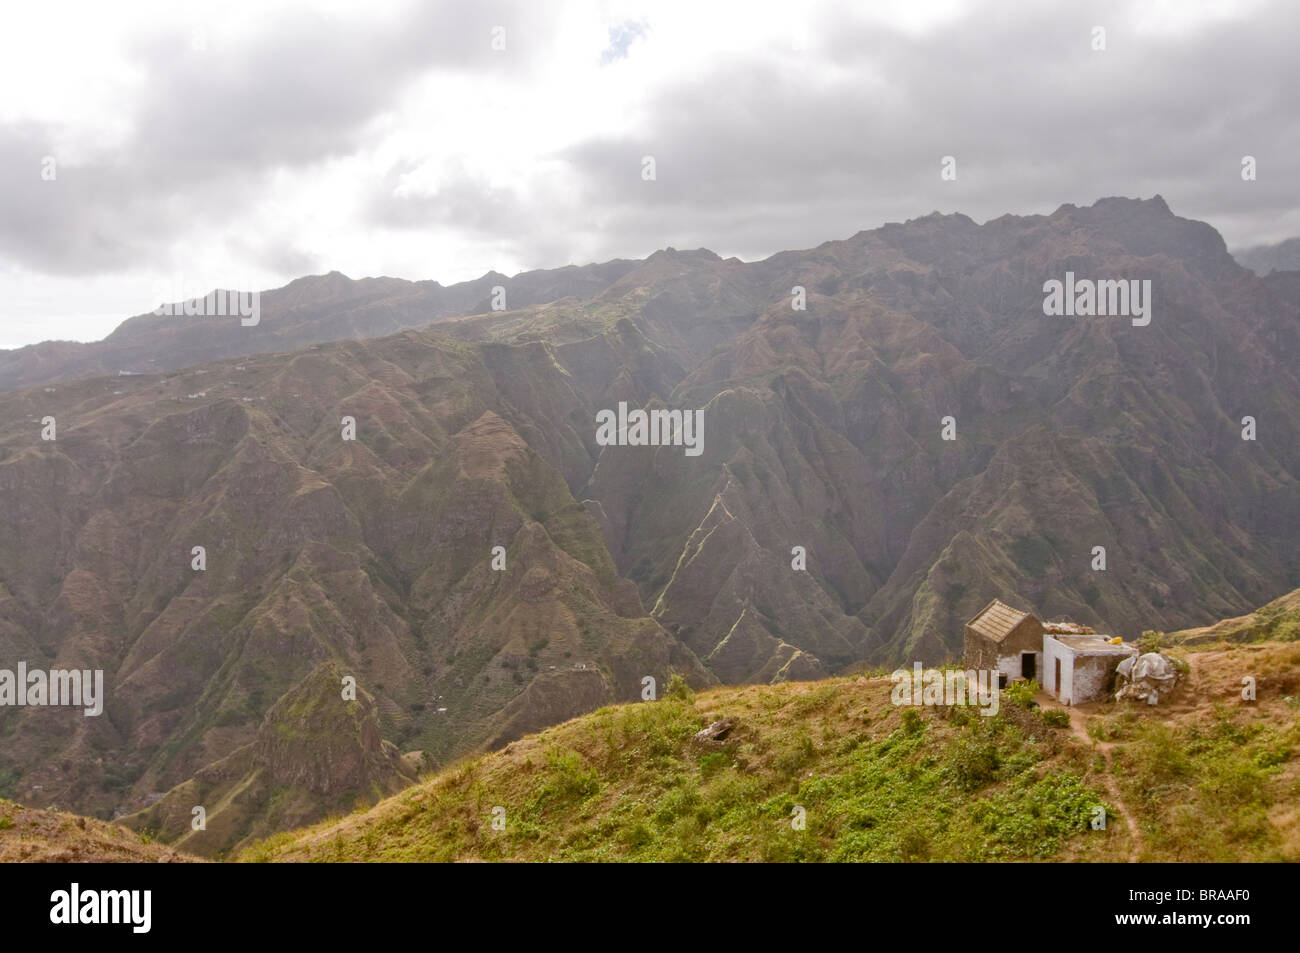 Kleines Haus in Felslandschaft, San Antao, Kapverdische Inseln, Afrika Stockfoto